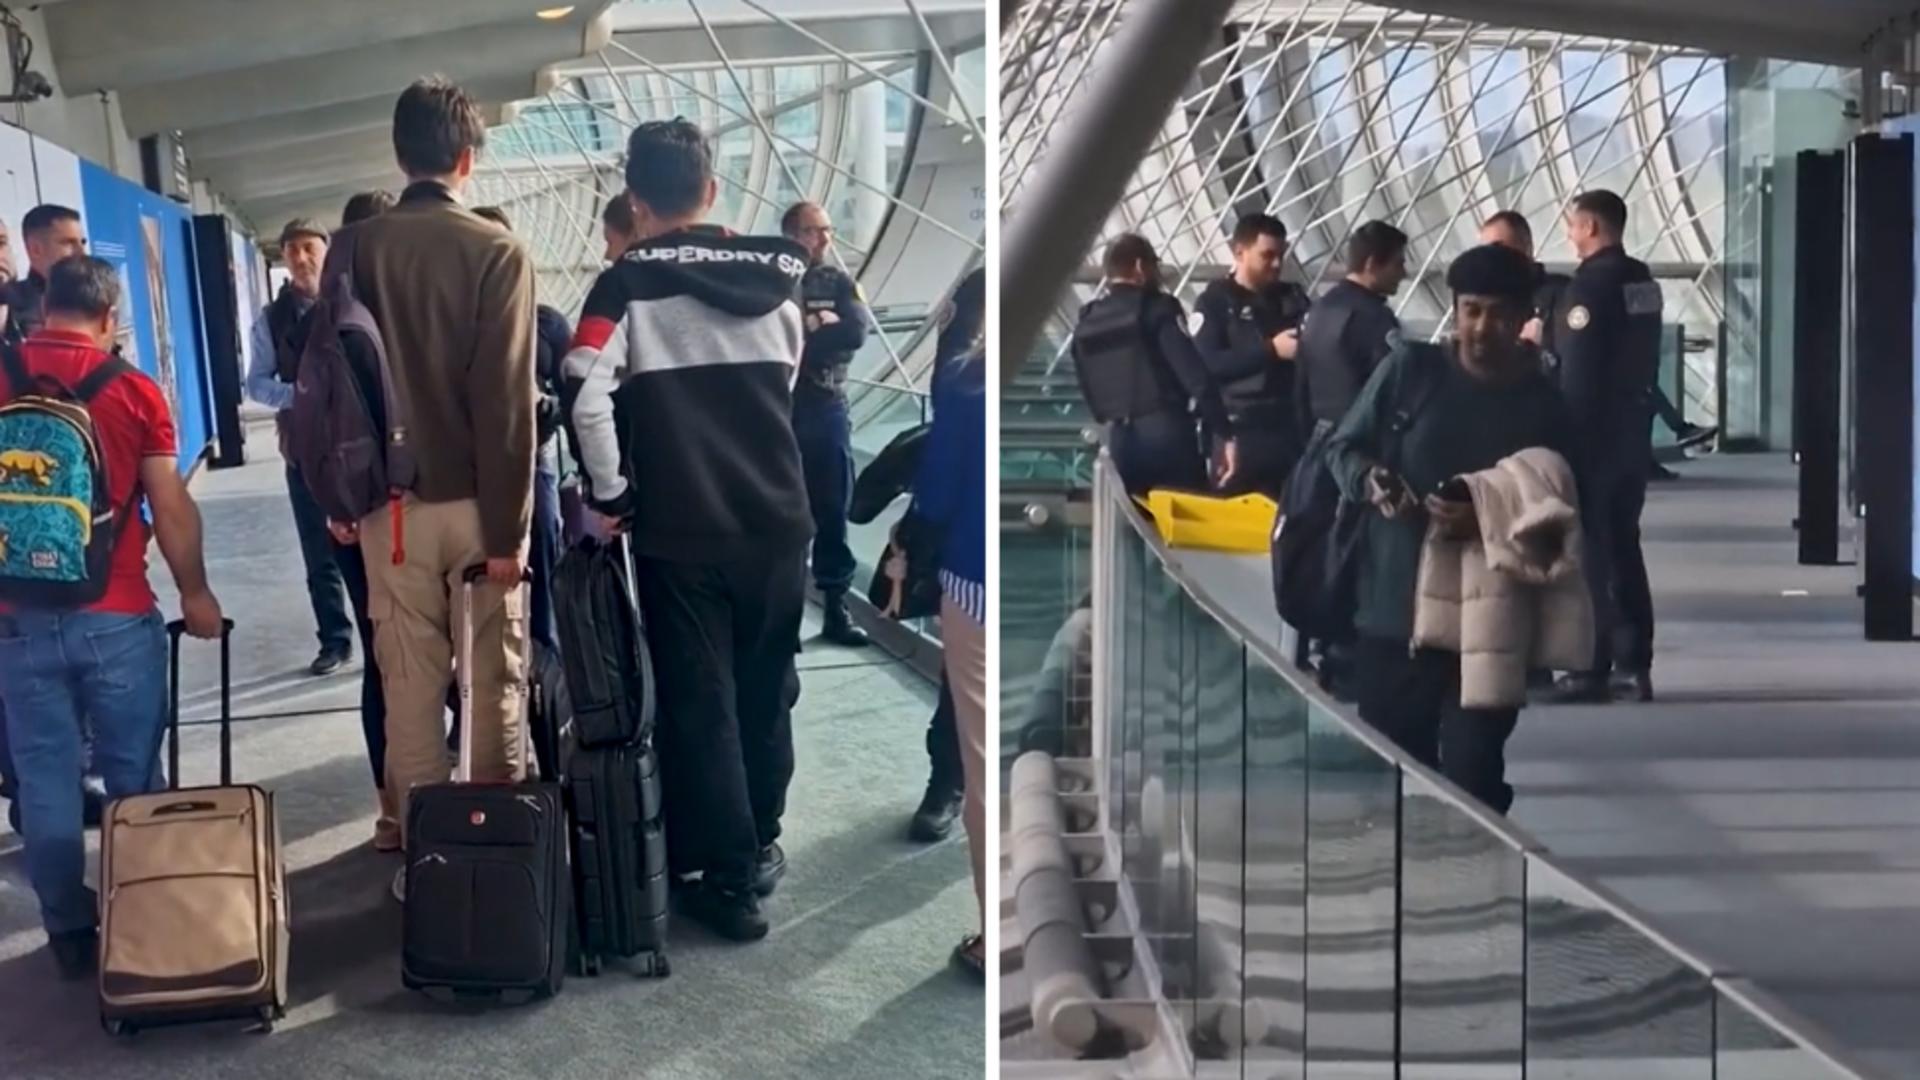 Păcăleala Schengen: Pasagerii unui avion din România au fost controlați de poliție în aeroport. „Ne mută frontiera la ieșirea din avion”